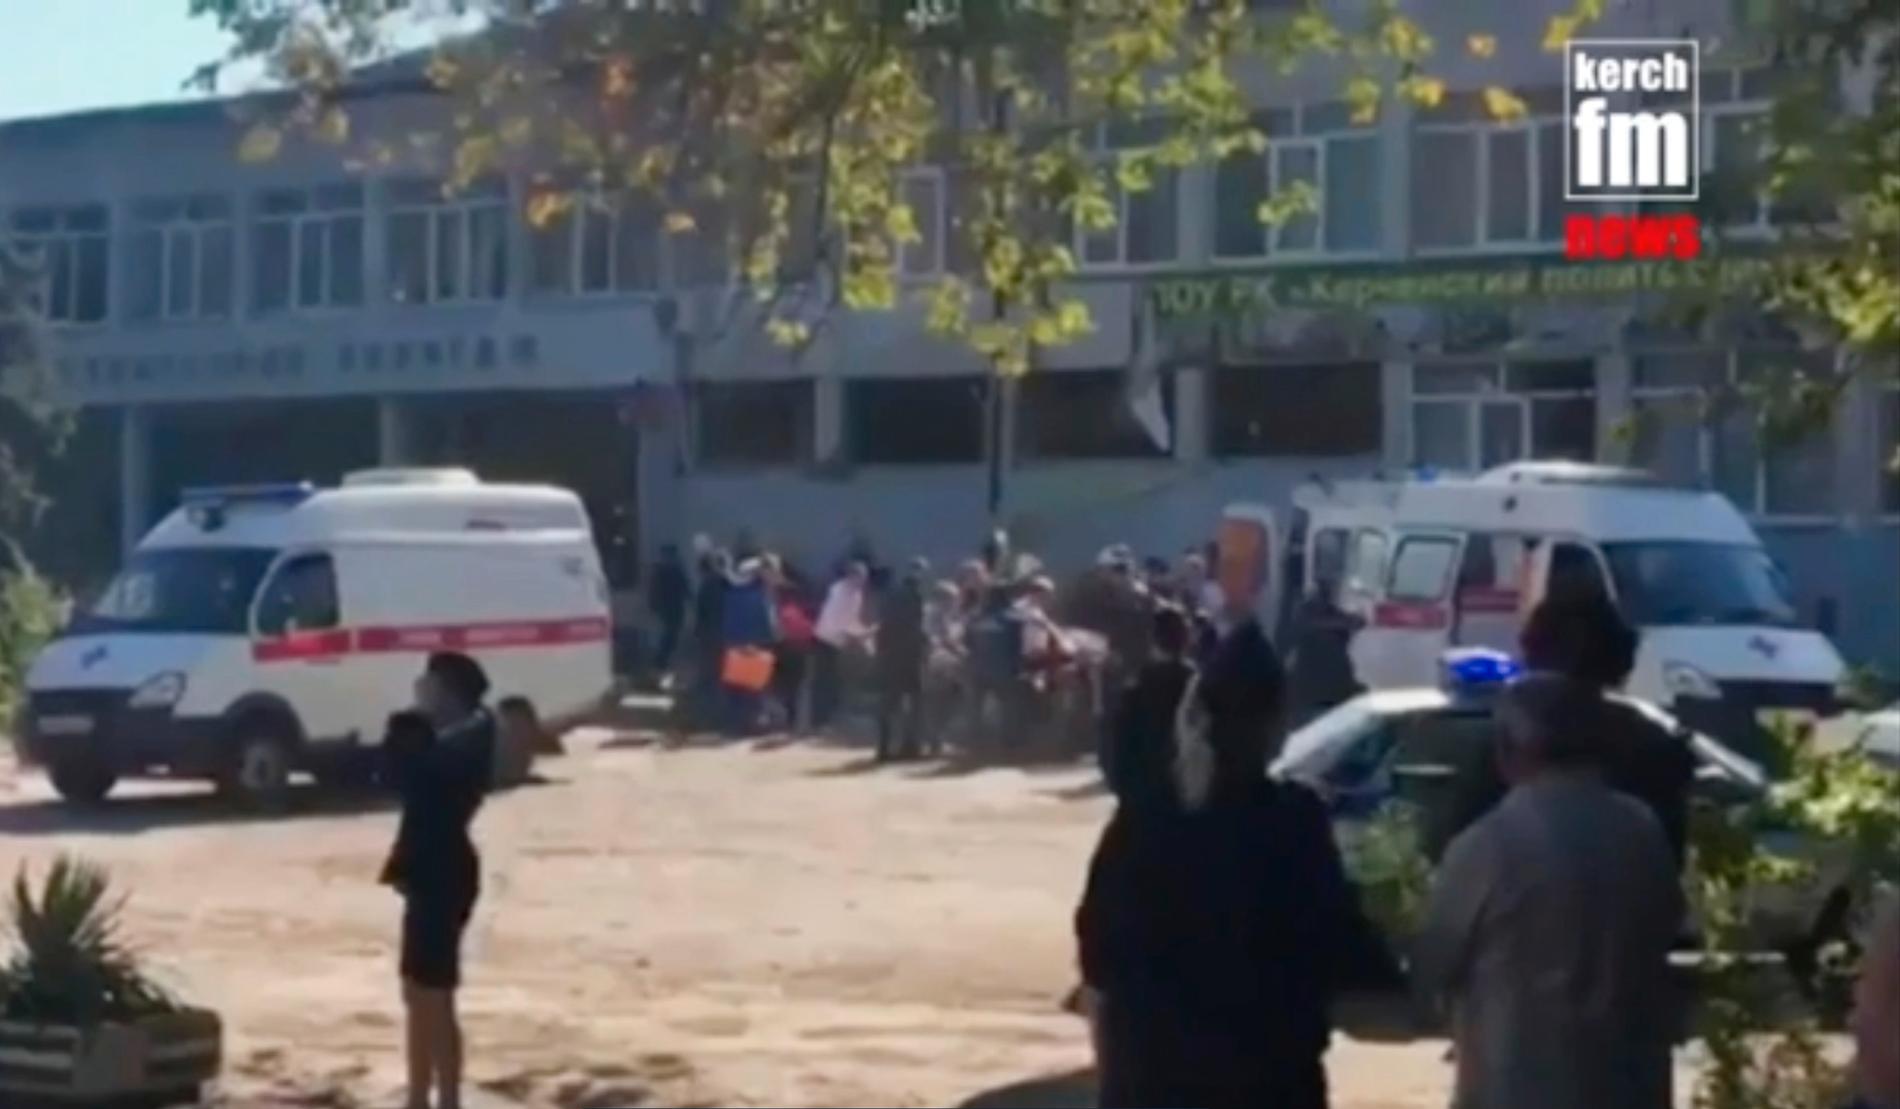 En stillbild från en video som publicerats av det lokala mediebolaget Kerch FM, och som uppges visa skolan i Kertj där explosionen skett.